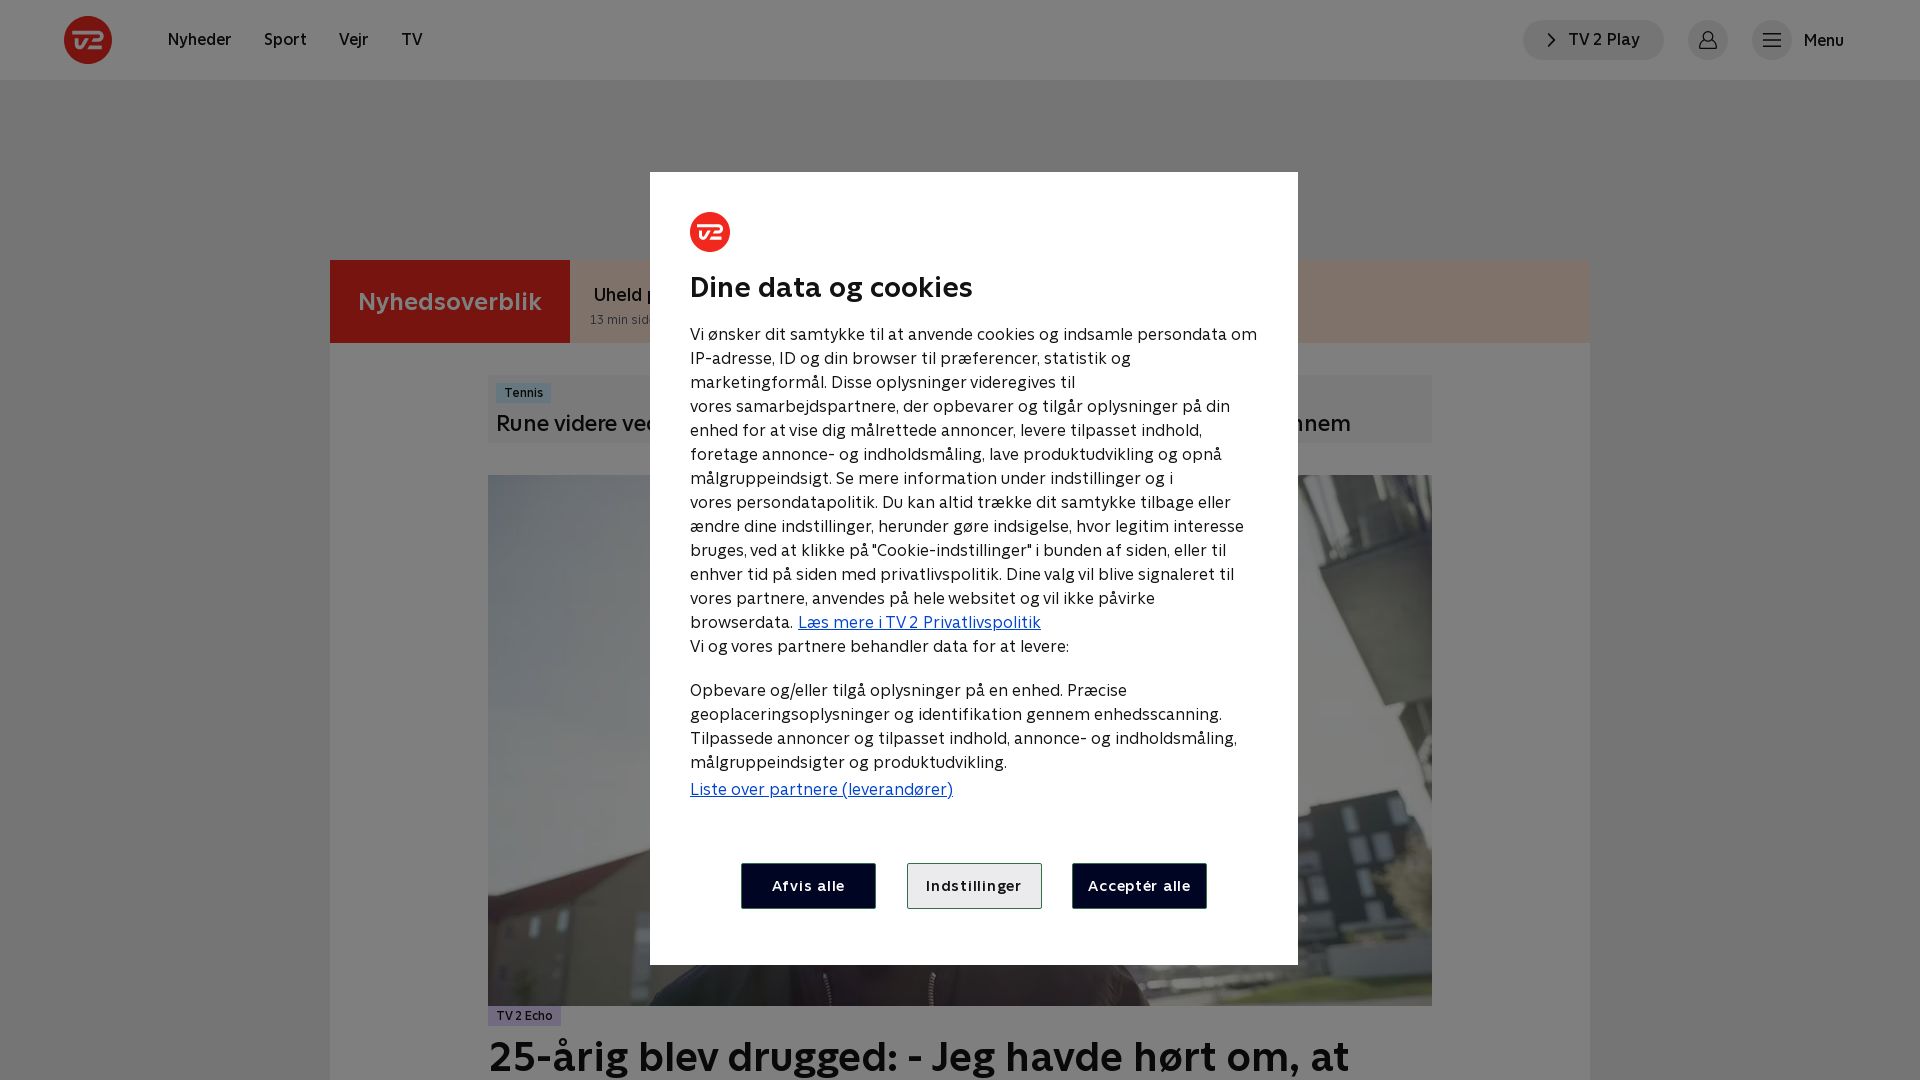 Website status tv2.dk is   ONLINE